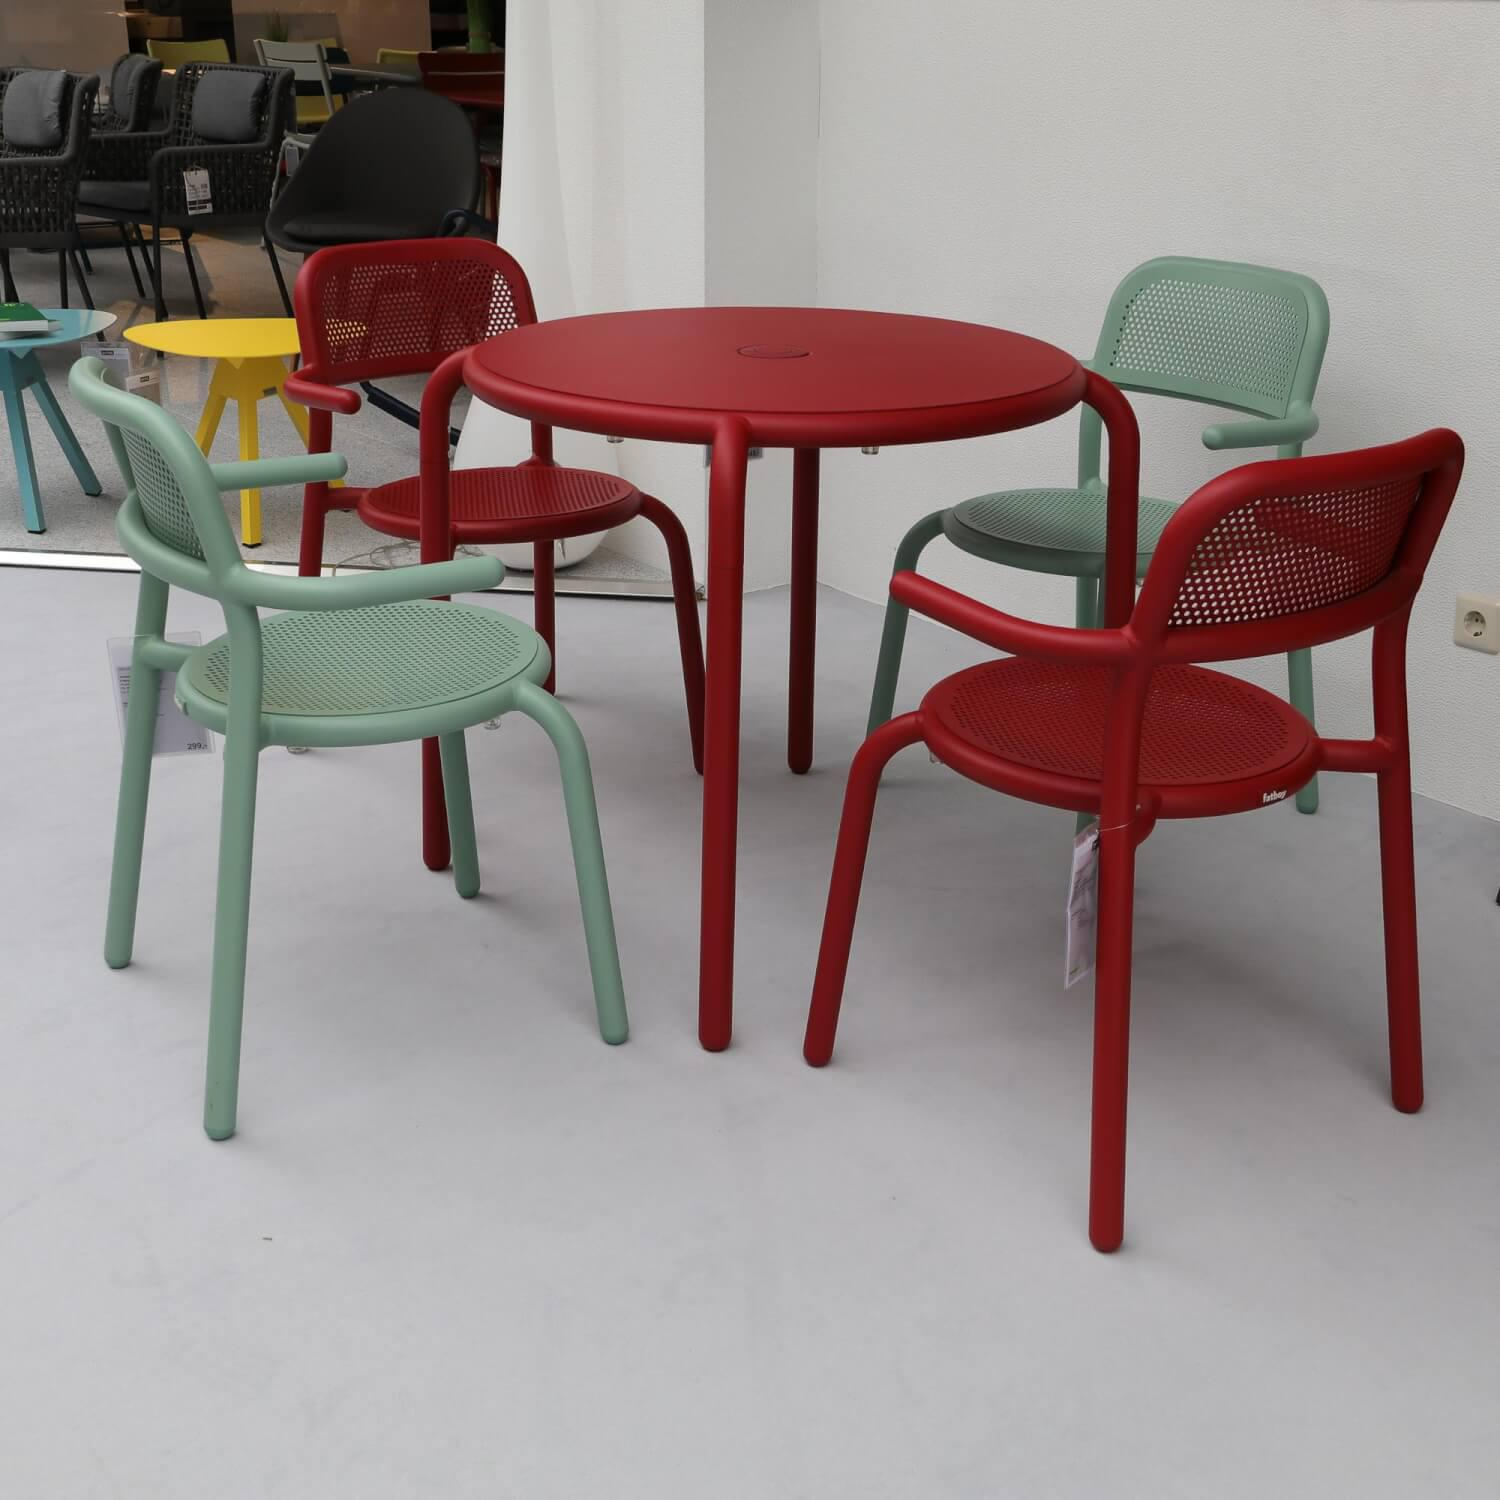 Sitzgruppe Armlehnstuhl Aluminum pulverbeschichtet Mist Green und Industrial Red und Tisch Bistro Aluminum pulverbeschichtet Industrial Red